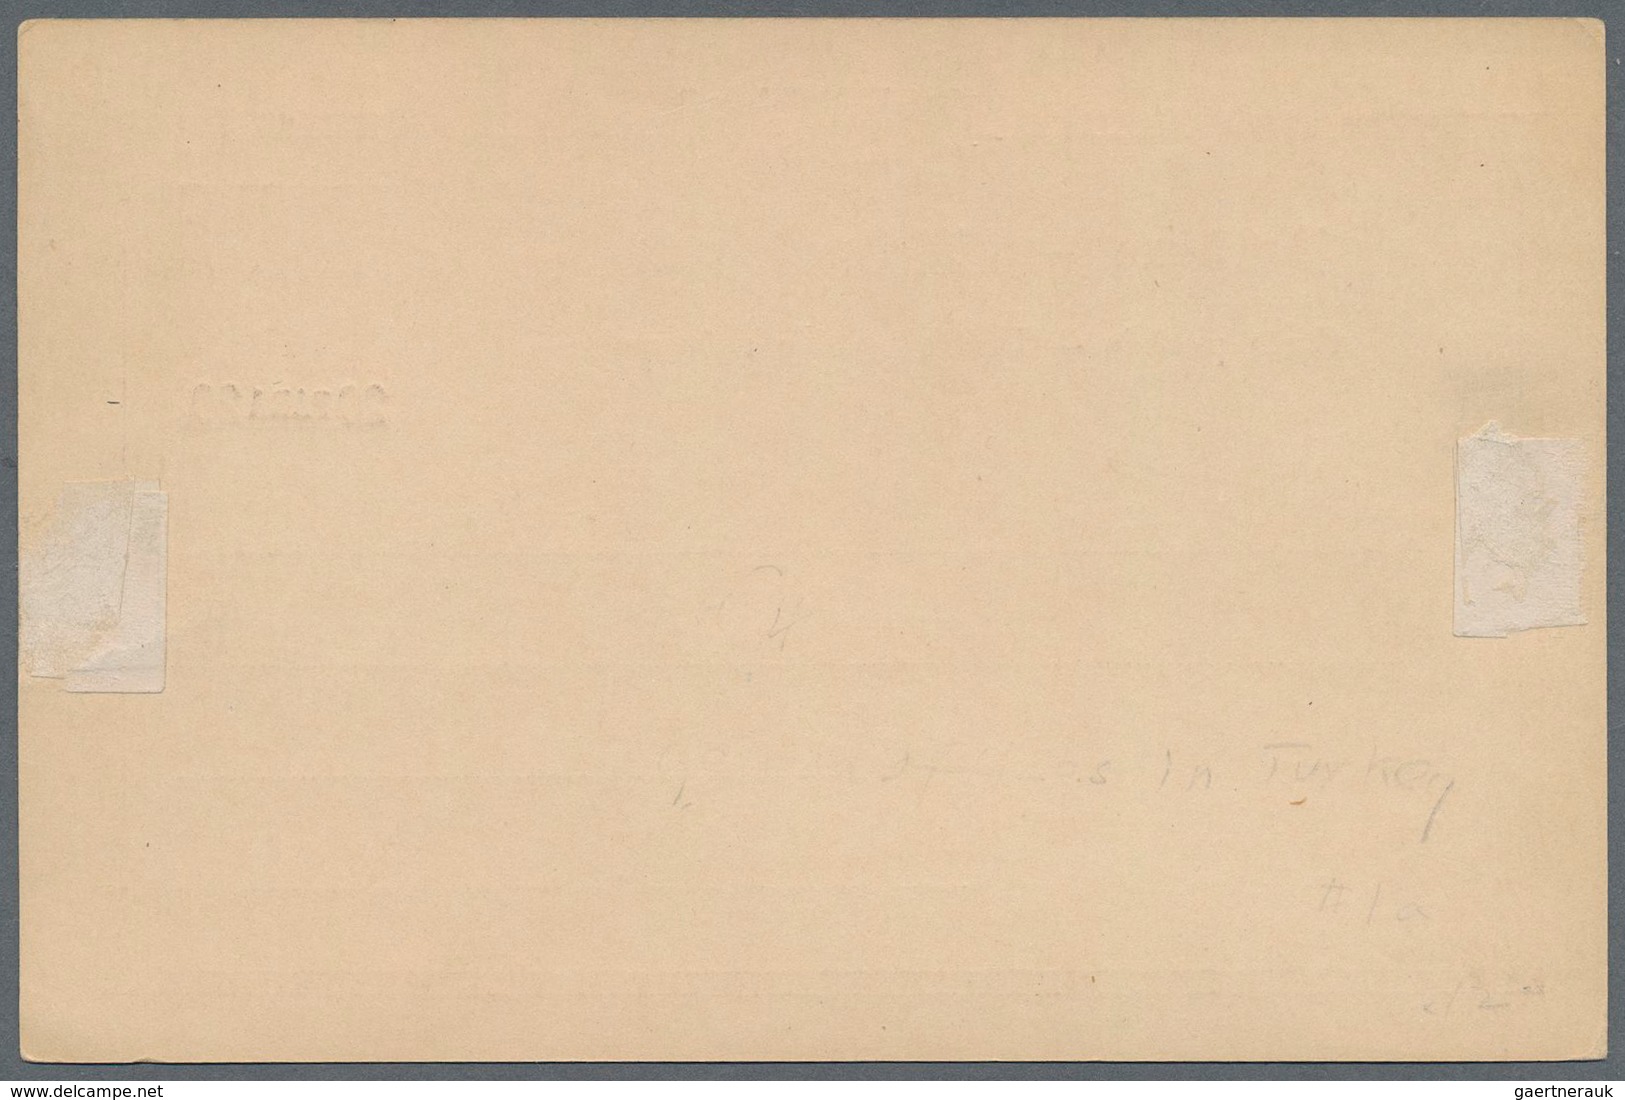 Deutsche Post In Der Türkei - Ganzsachen: 1889. Postkarte 20 Para Auf 10 Pf In Type III "Bemerkung H - Deutsche Post In Der Türkei